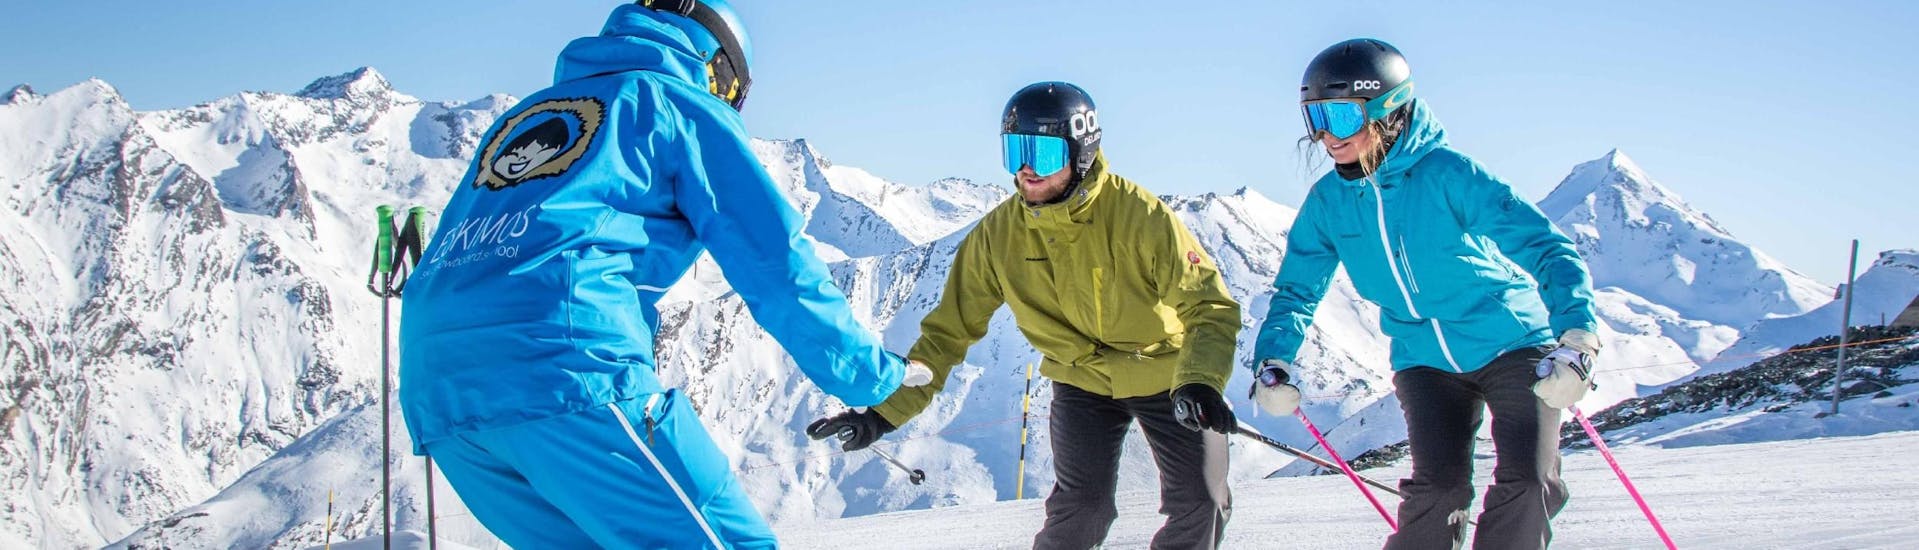 Clases de esquí para adultos para todos los niveles con Ski School ESKIMOS Saas-Fee.